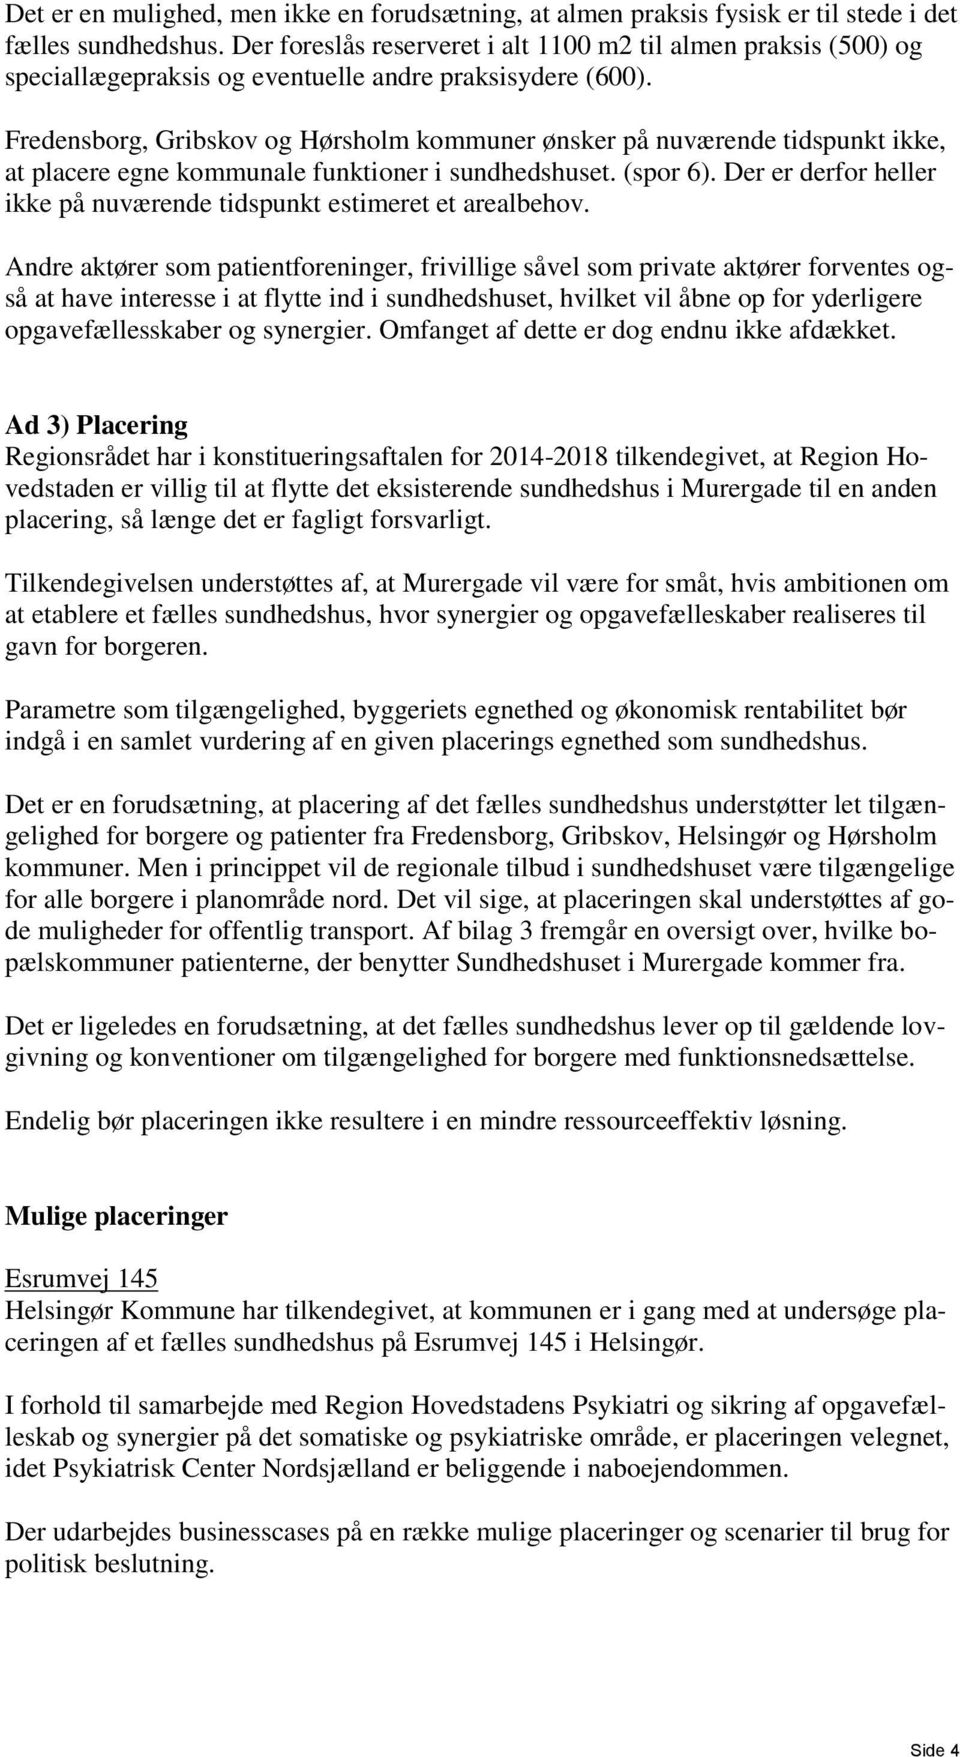 Fredensborg, Gribskov og Hørsholm kommuner ønsker på nuværende tidspunkt ikke, at placere egne kommunale funktioner i sundhedshuset. (spor 6).